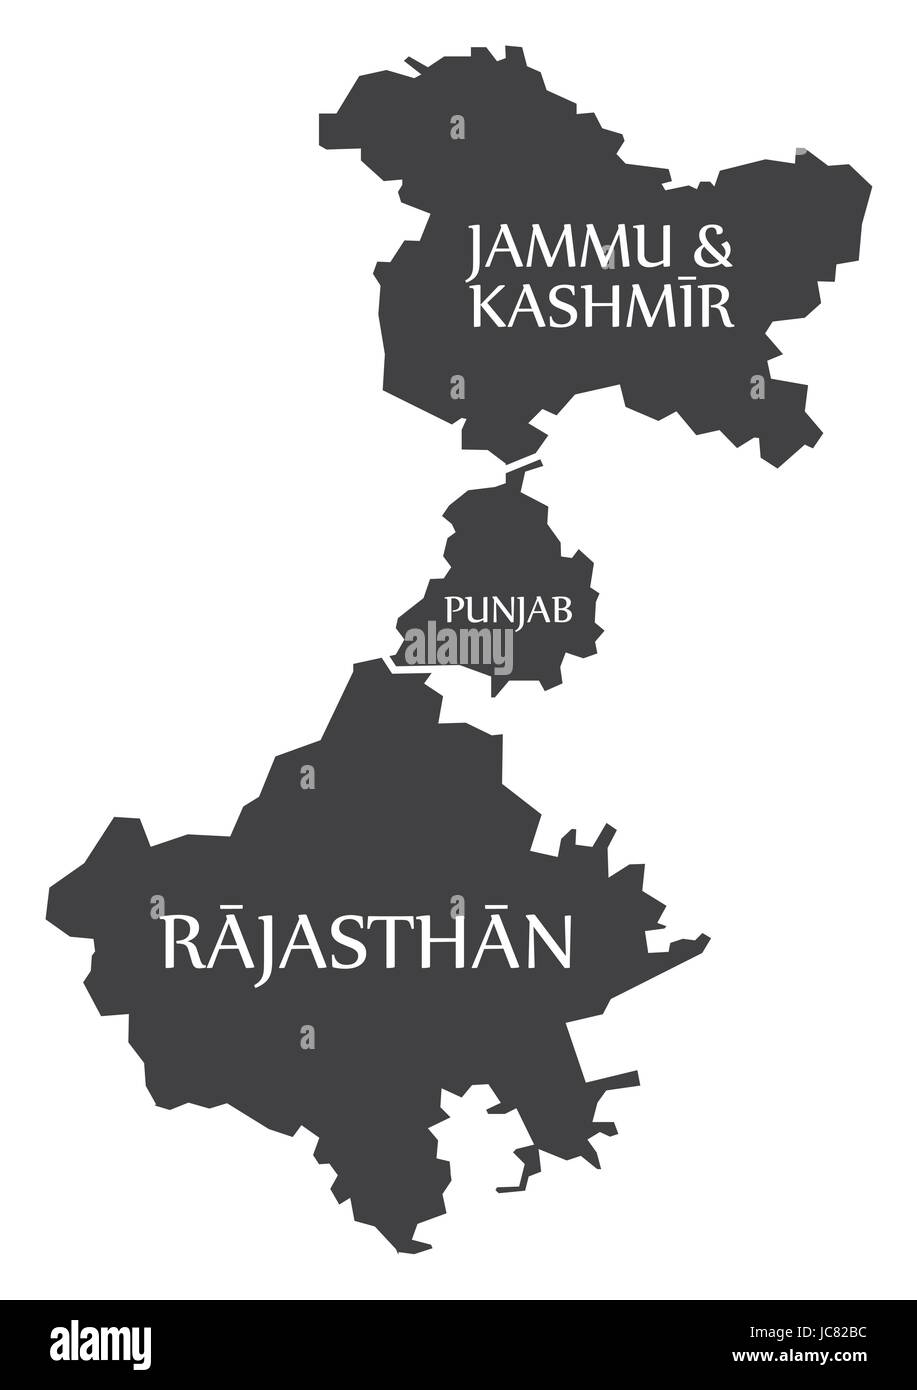 Jammu e Kashmir - Punjab - Rajasthan Mappa illustrazione di Stati indiani Illustrazione Vettoriale